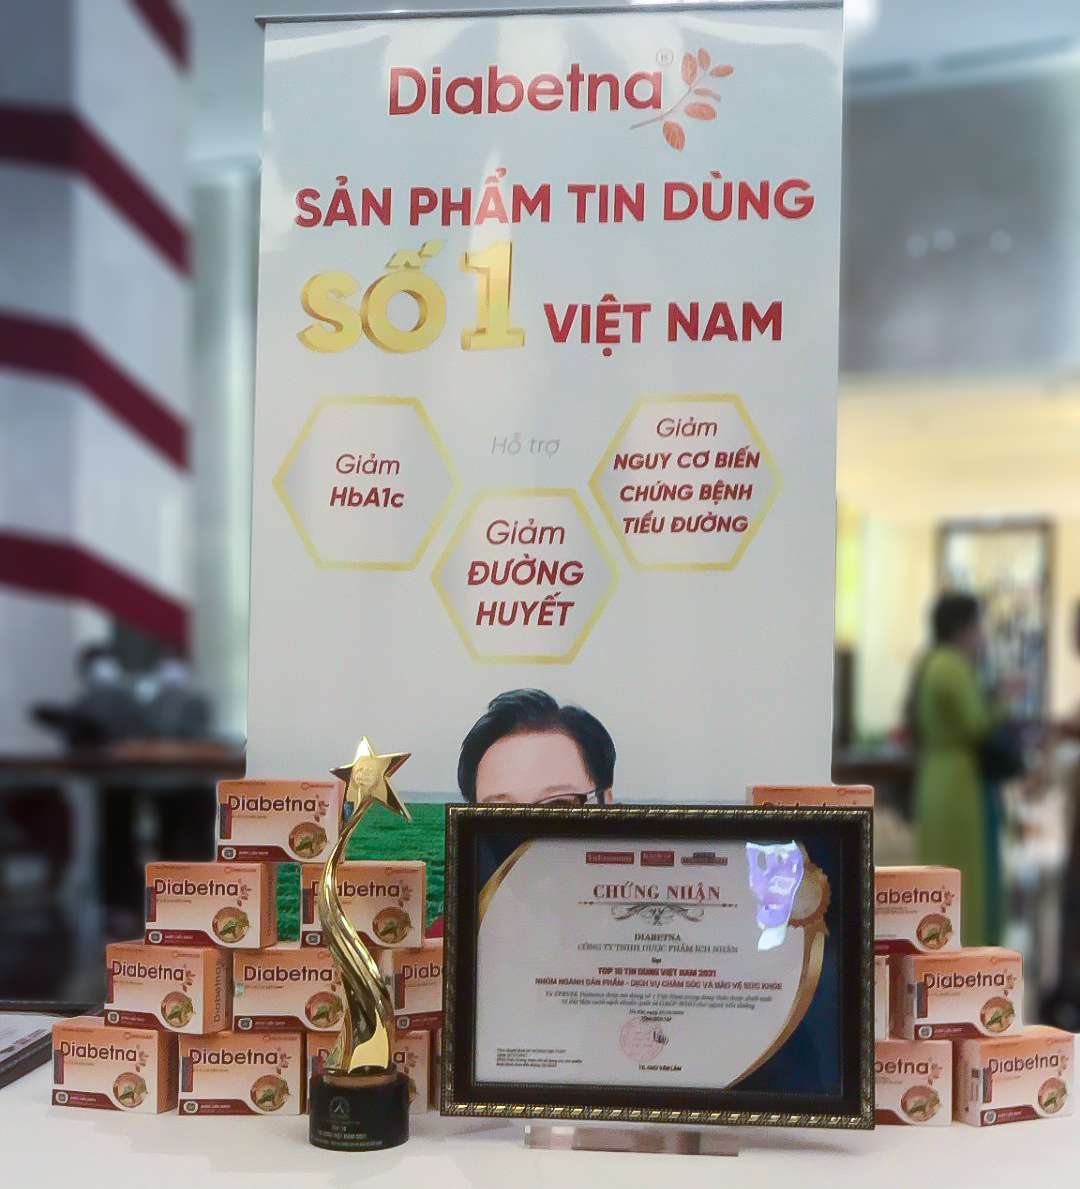 Vinh danh sản phẩm Tin - Dùng số 1 Việt Nam cho người tiểu đường - Ảnh 3.